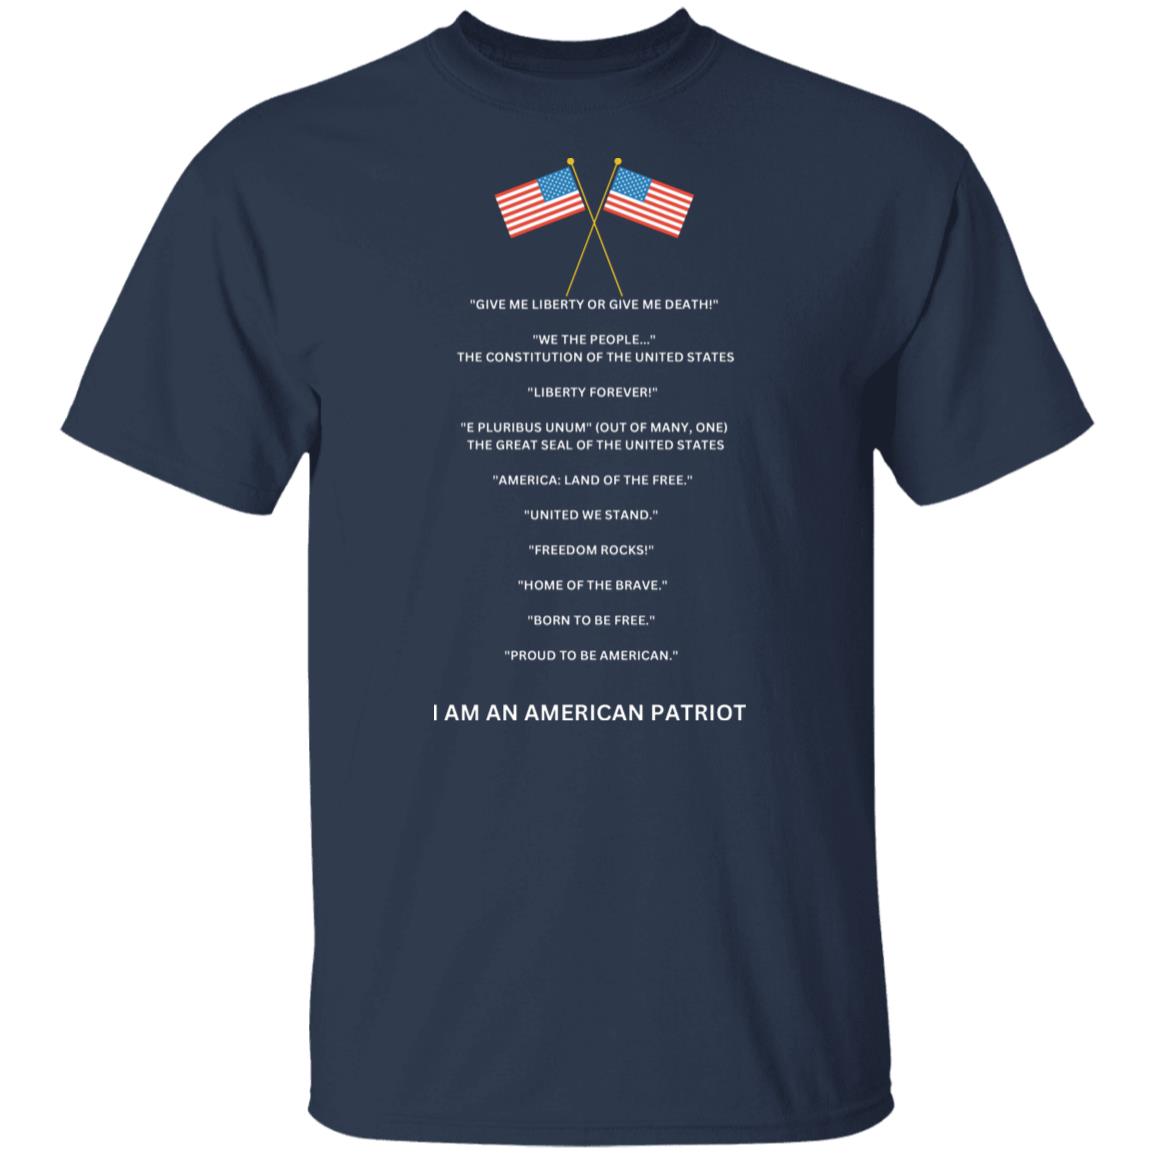 American patriot - I am - short sleeve